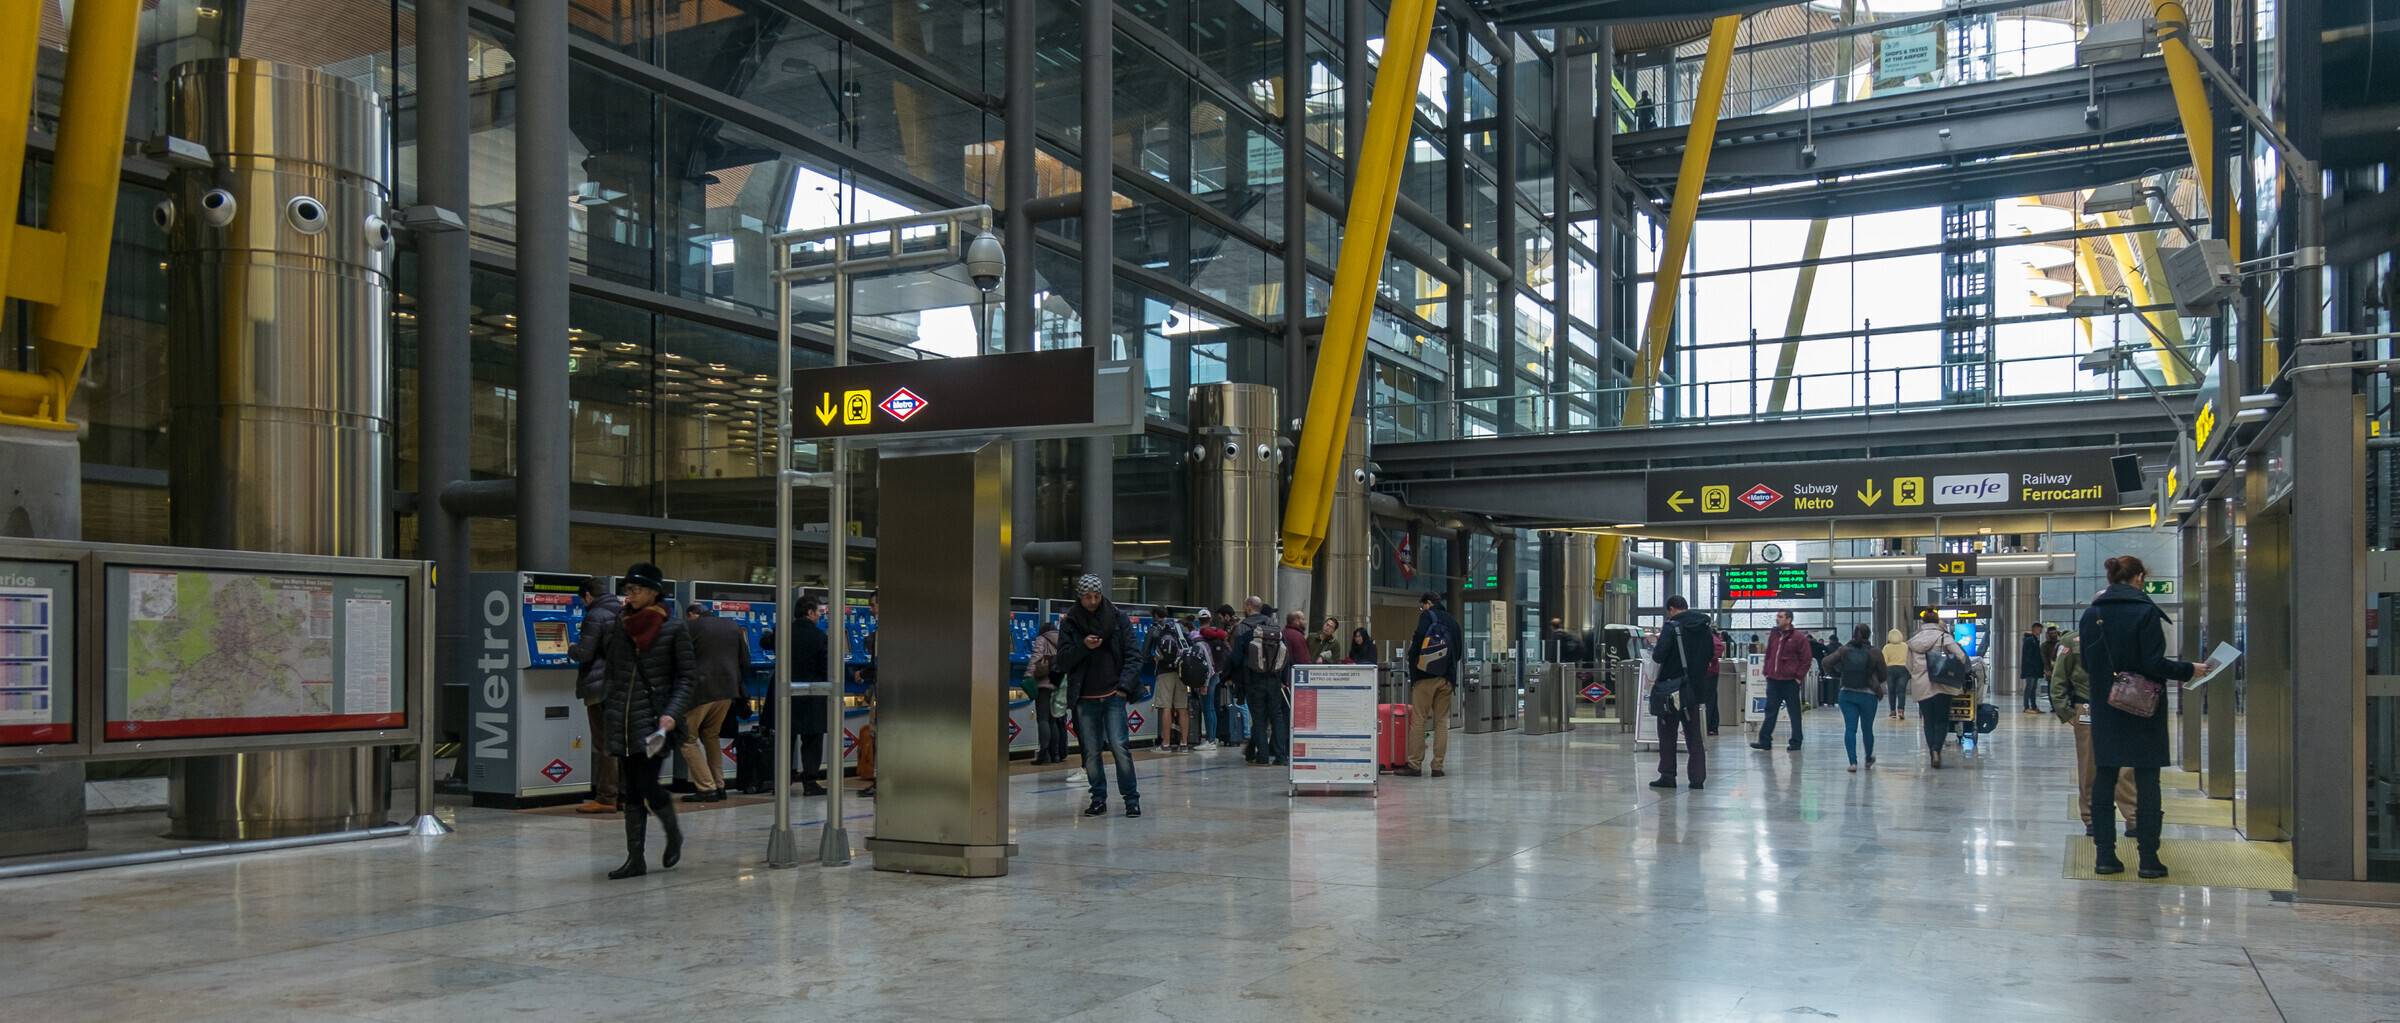 Международный аэропорт в мадриде: фото и описание, терминалы, рейсы и отзывы пассажиров :: syl.ru